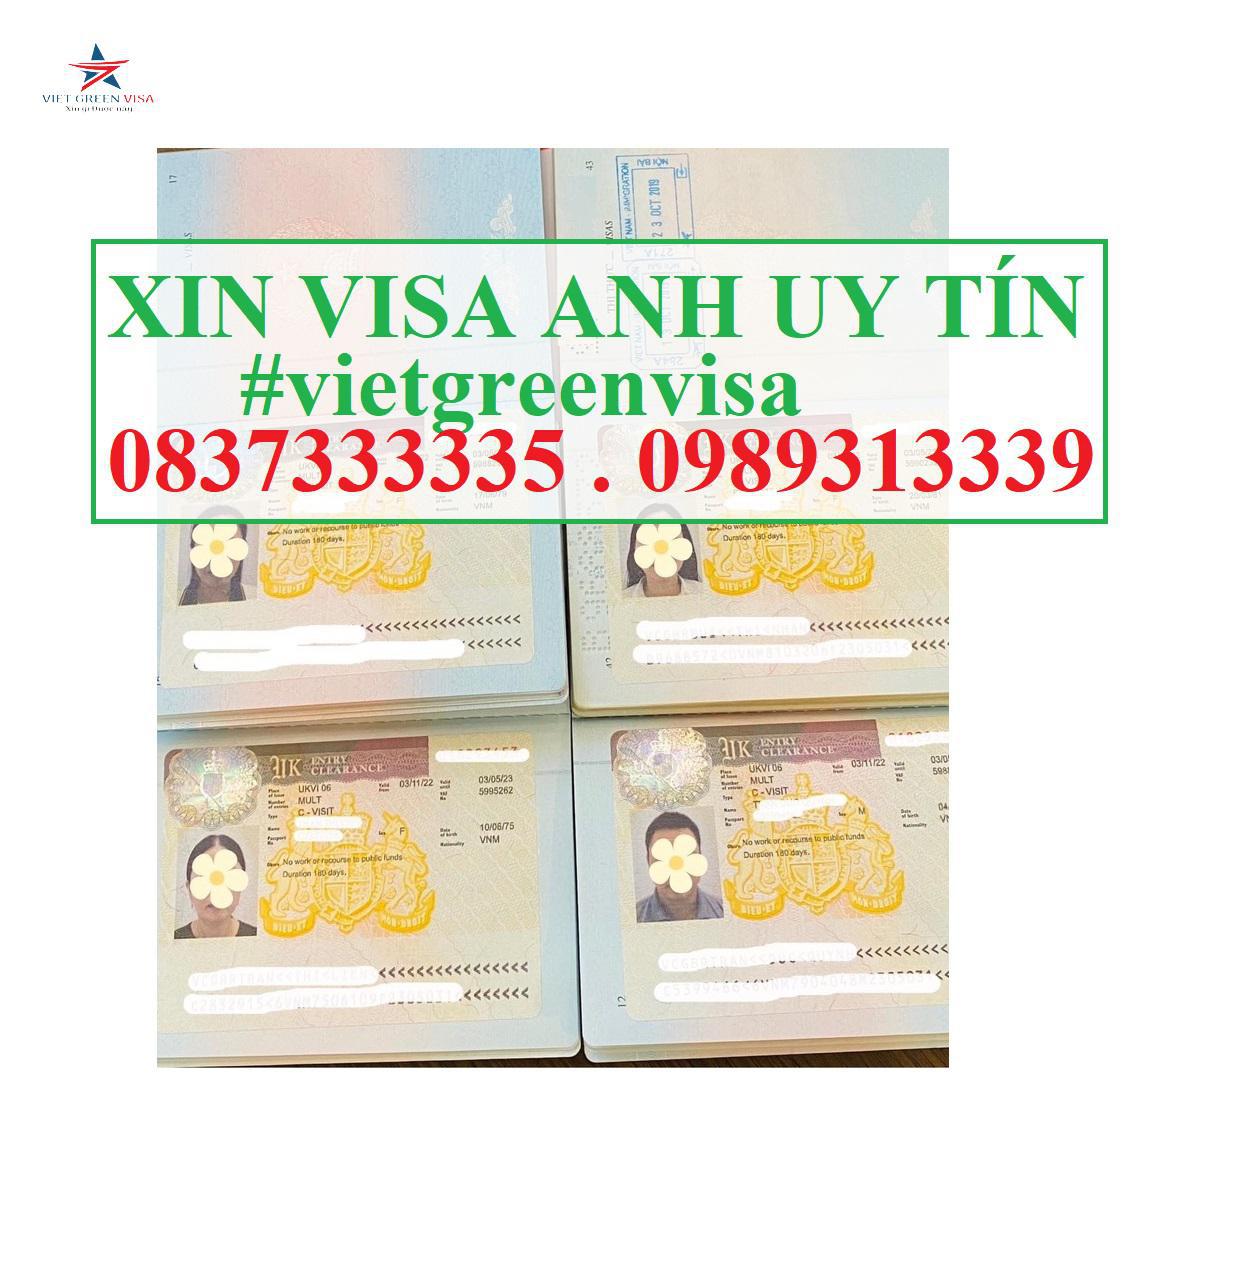 Viet Green Visa, Visa đi Anh, Chi phí xin visa Anh thăm thân